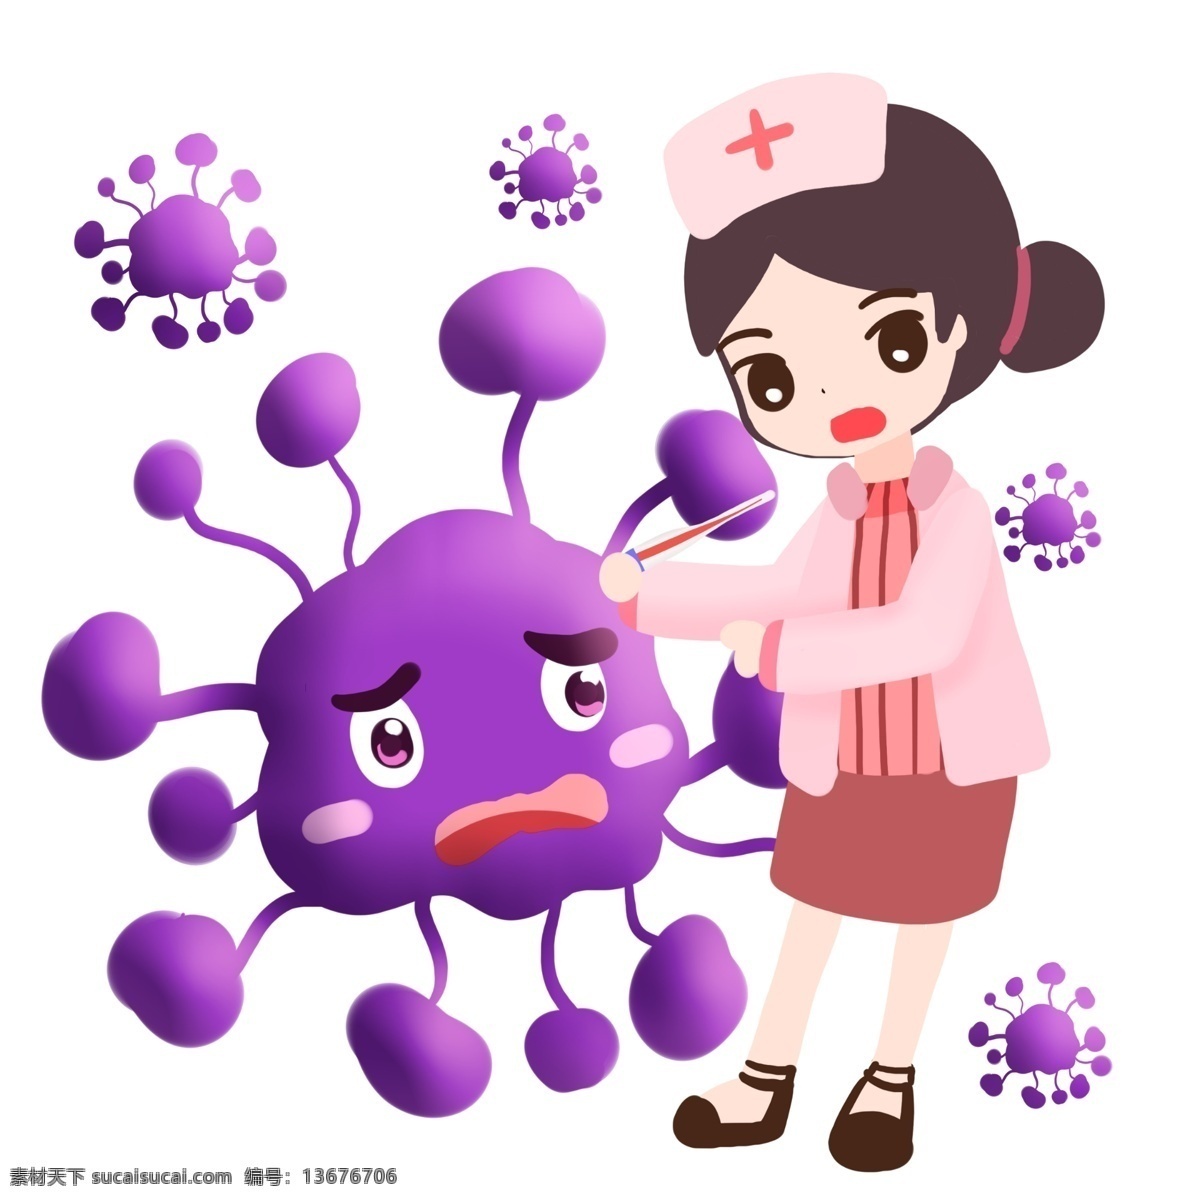 护士 紫色 细菌 治疗 卡通 制服 病毒 医学 生物 害怕 医疗 医院 疾病 生病 菌体 菌状 细胞